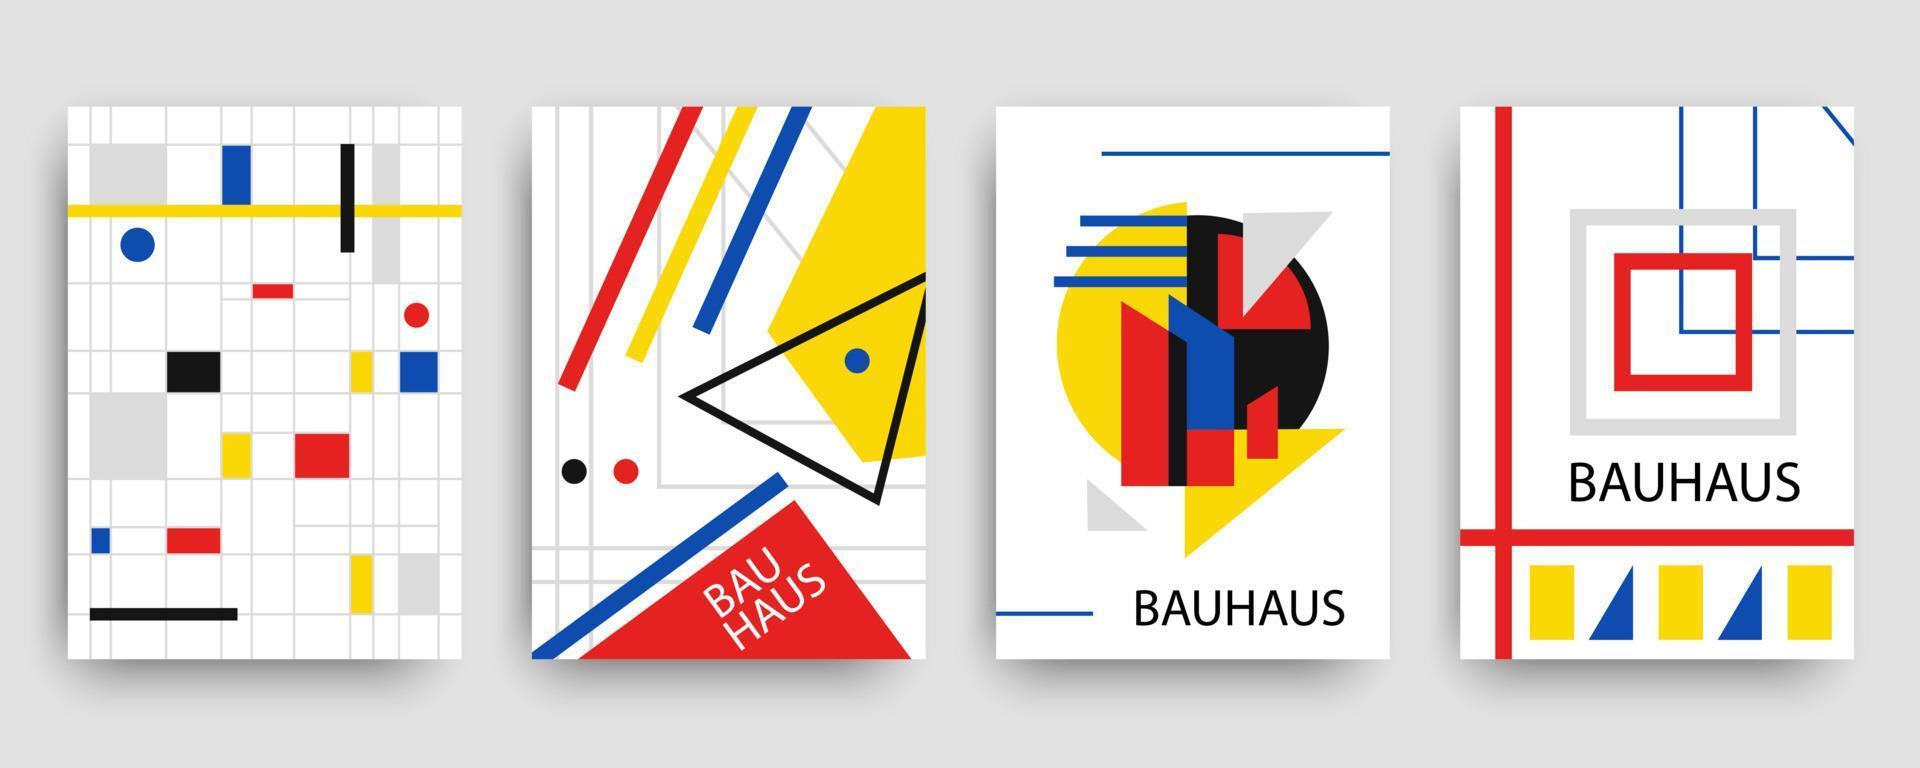 Retro-geometrisches Bauhaus, Memphis-Vorlagen-Set vektor